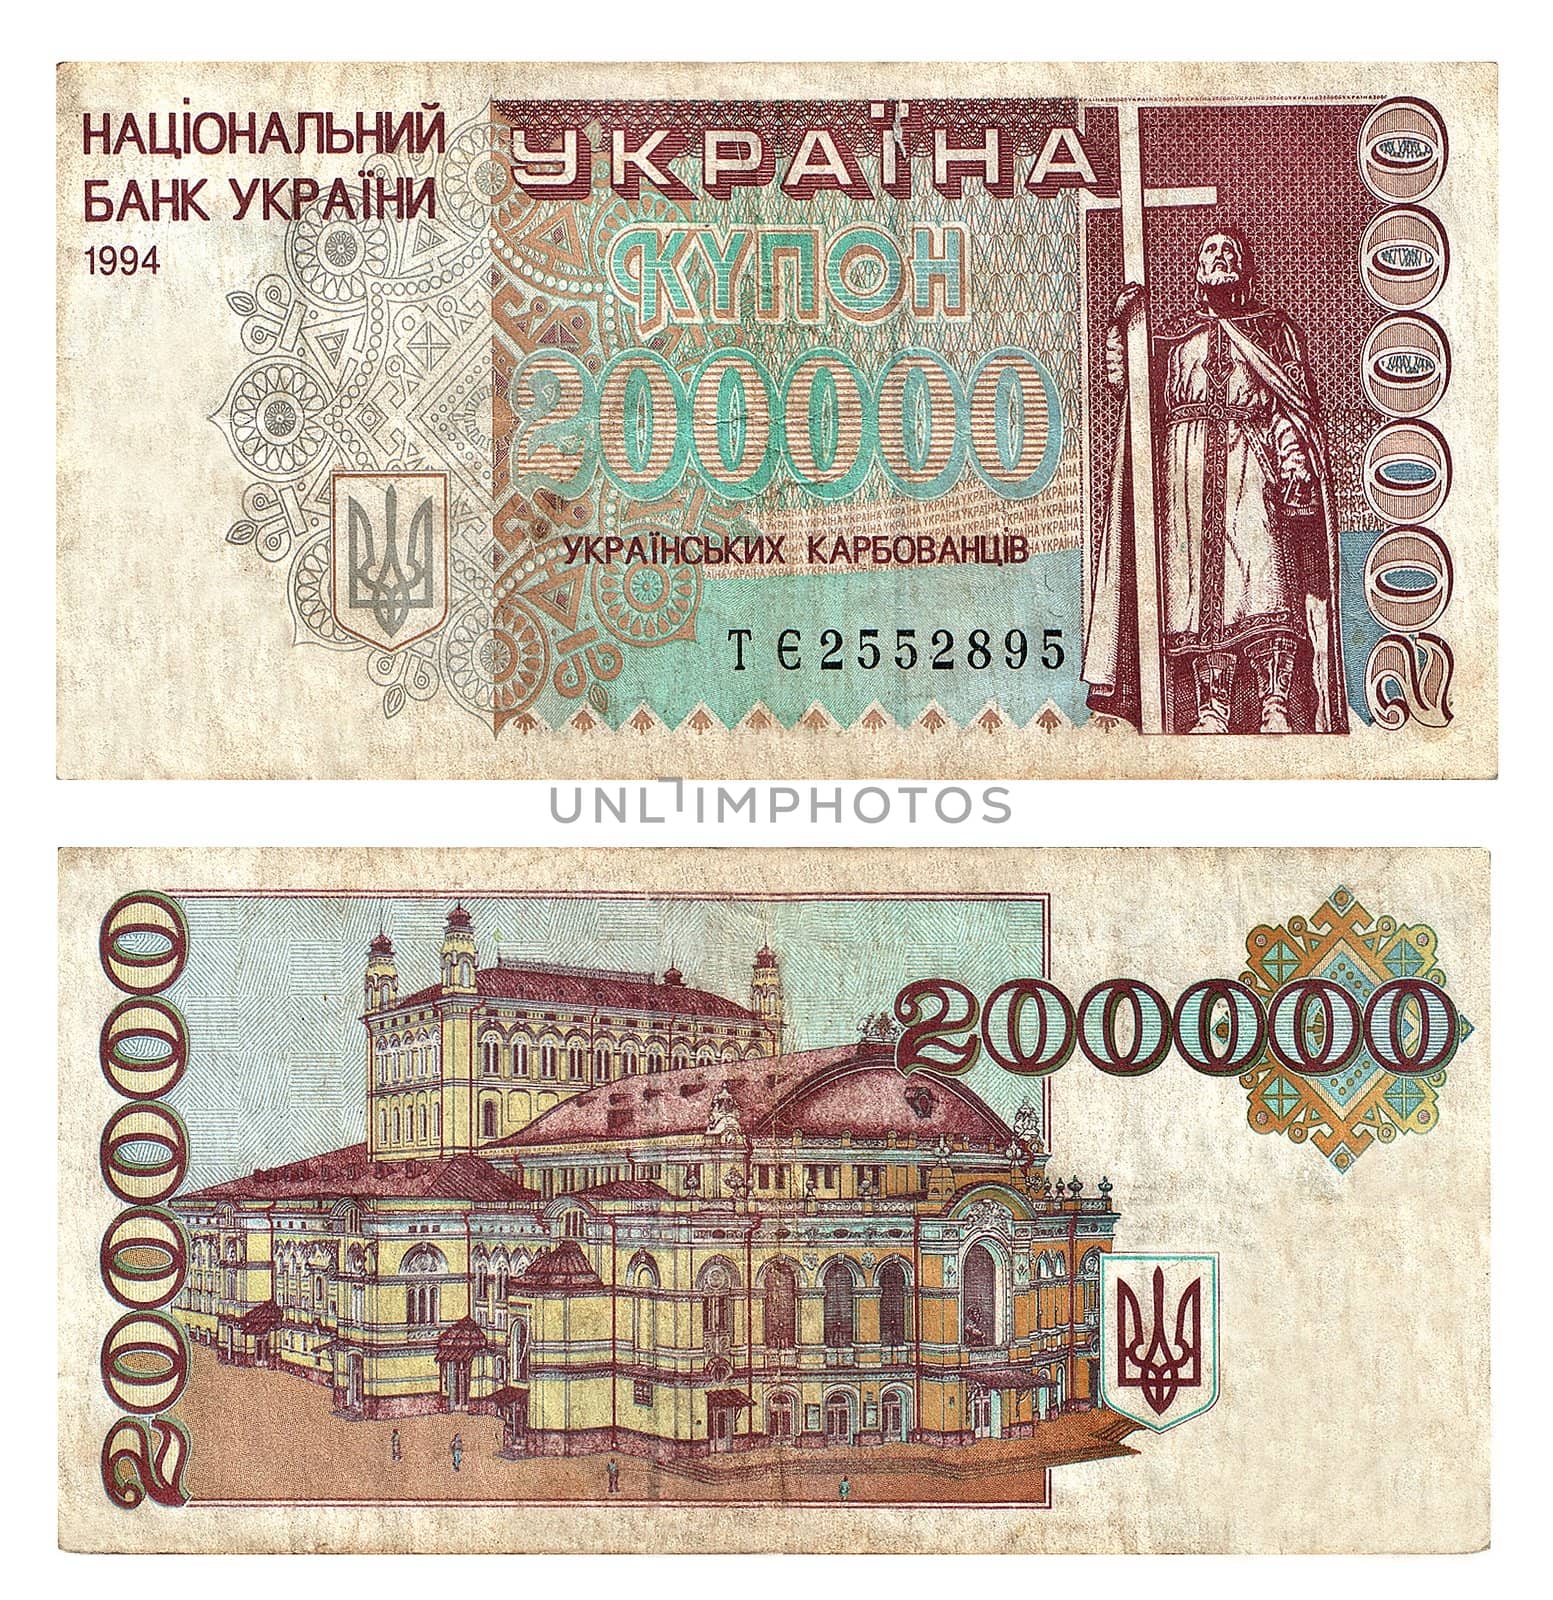 Paper money face value 200000 grivna of old design 1994
